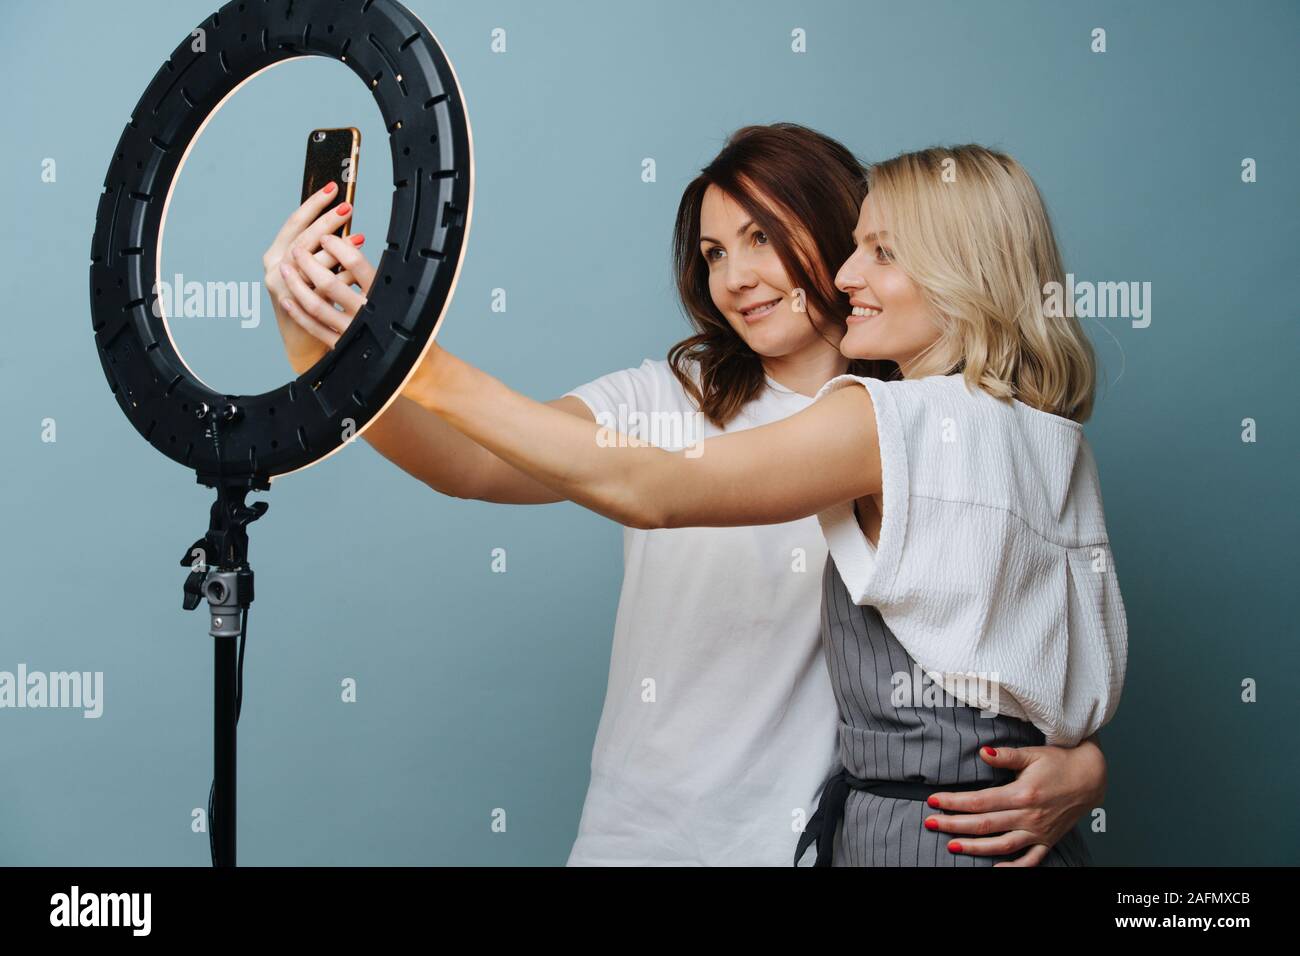 Weibliche Stylist nimmt selfie mit einem Client mit Hilfe von Ringlicht Stockfoto